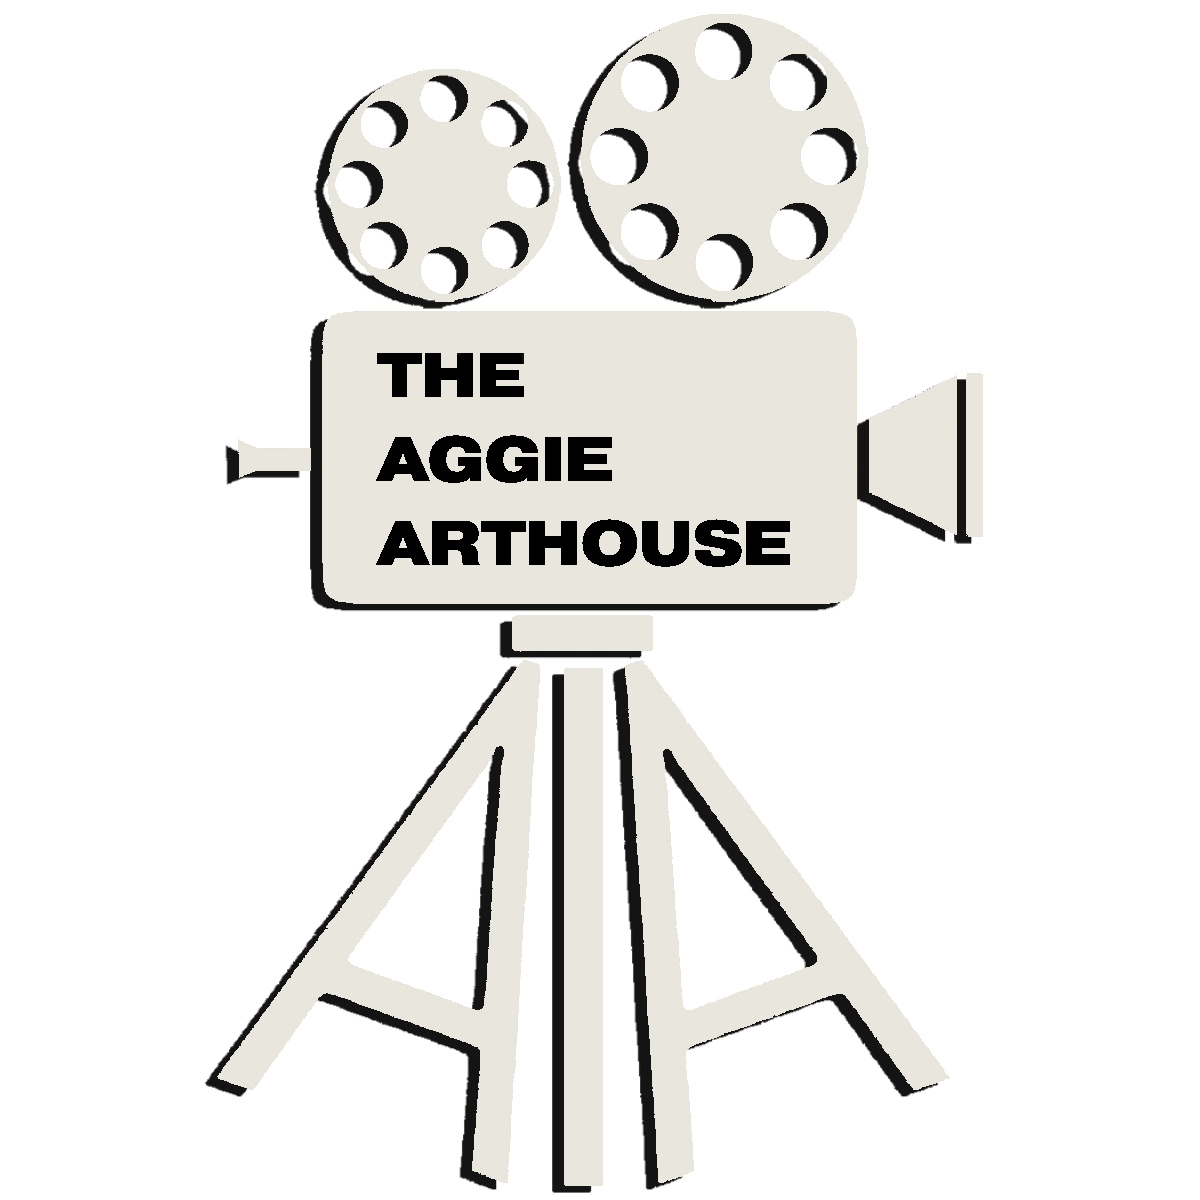 The Aggie Arthouse